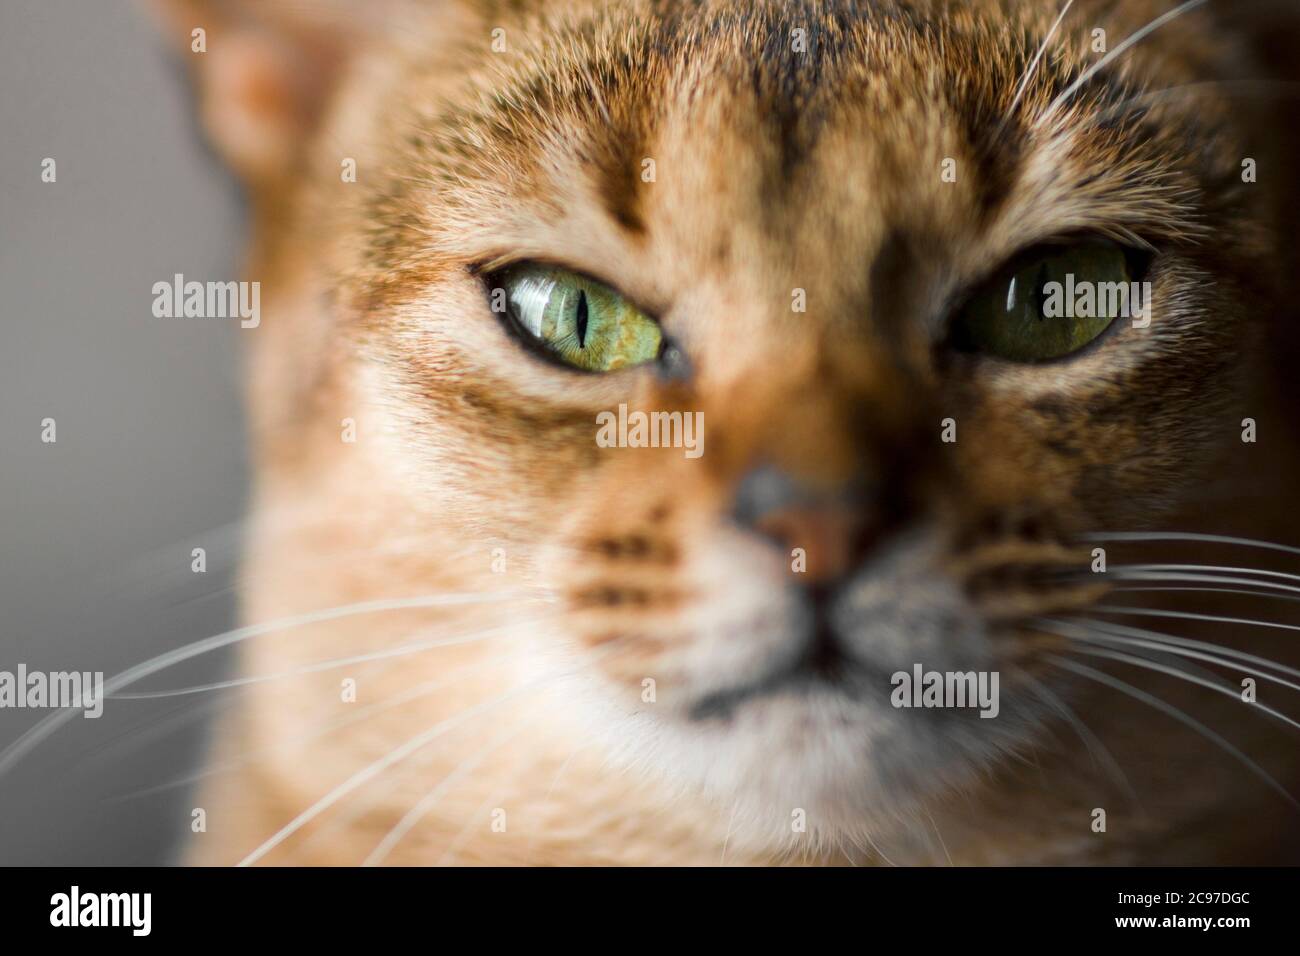 Stare directe d'un chat Abyssinien avec des yeux verts clairs Banque D'Images